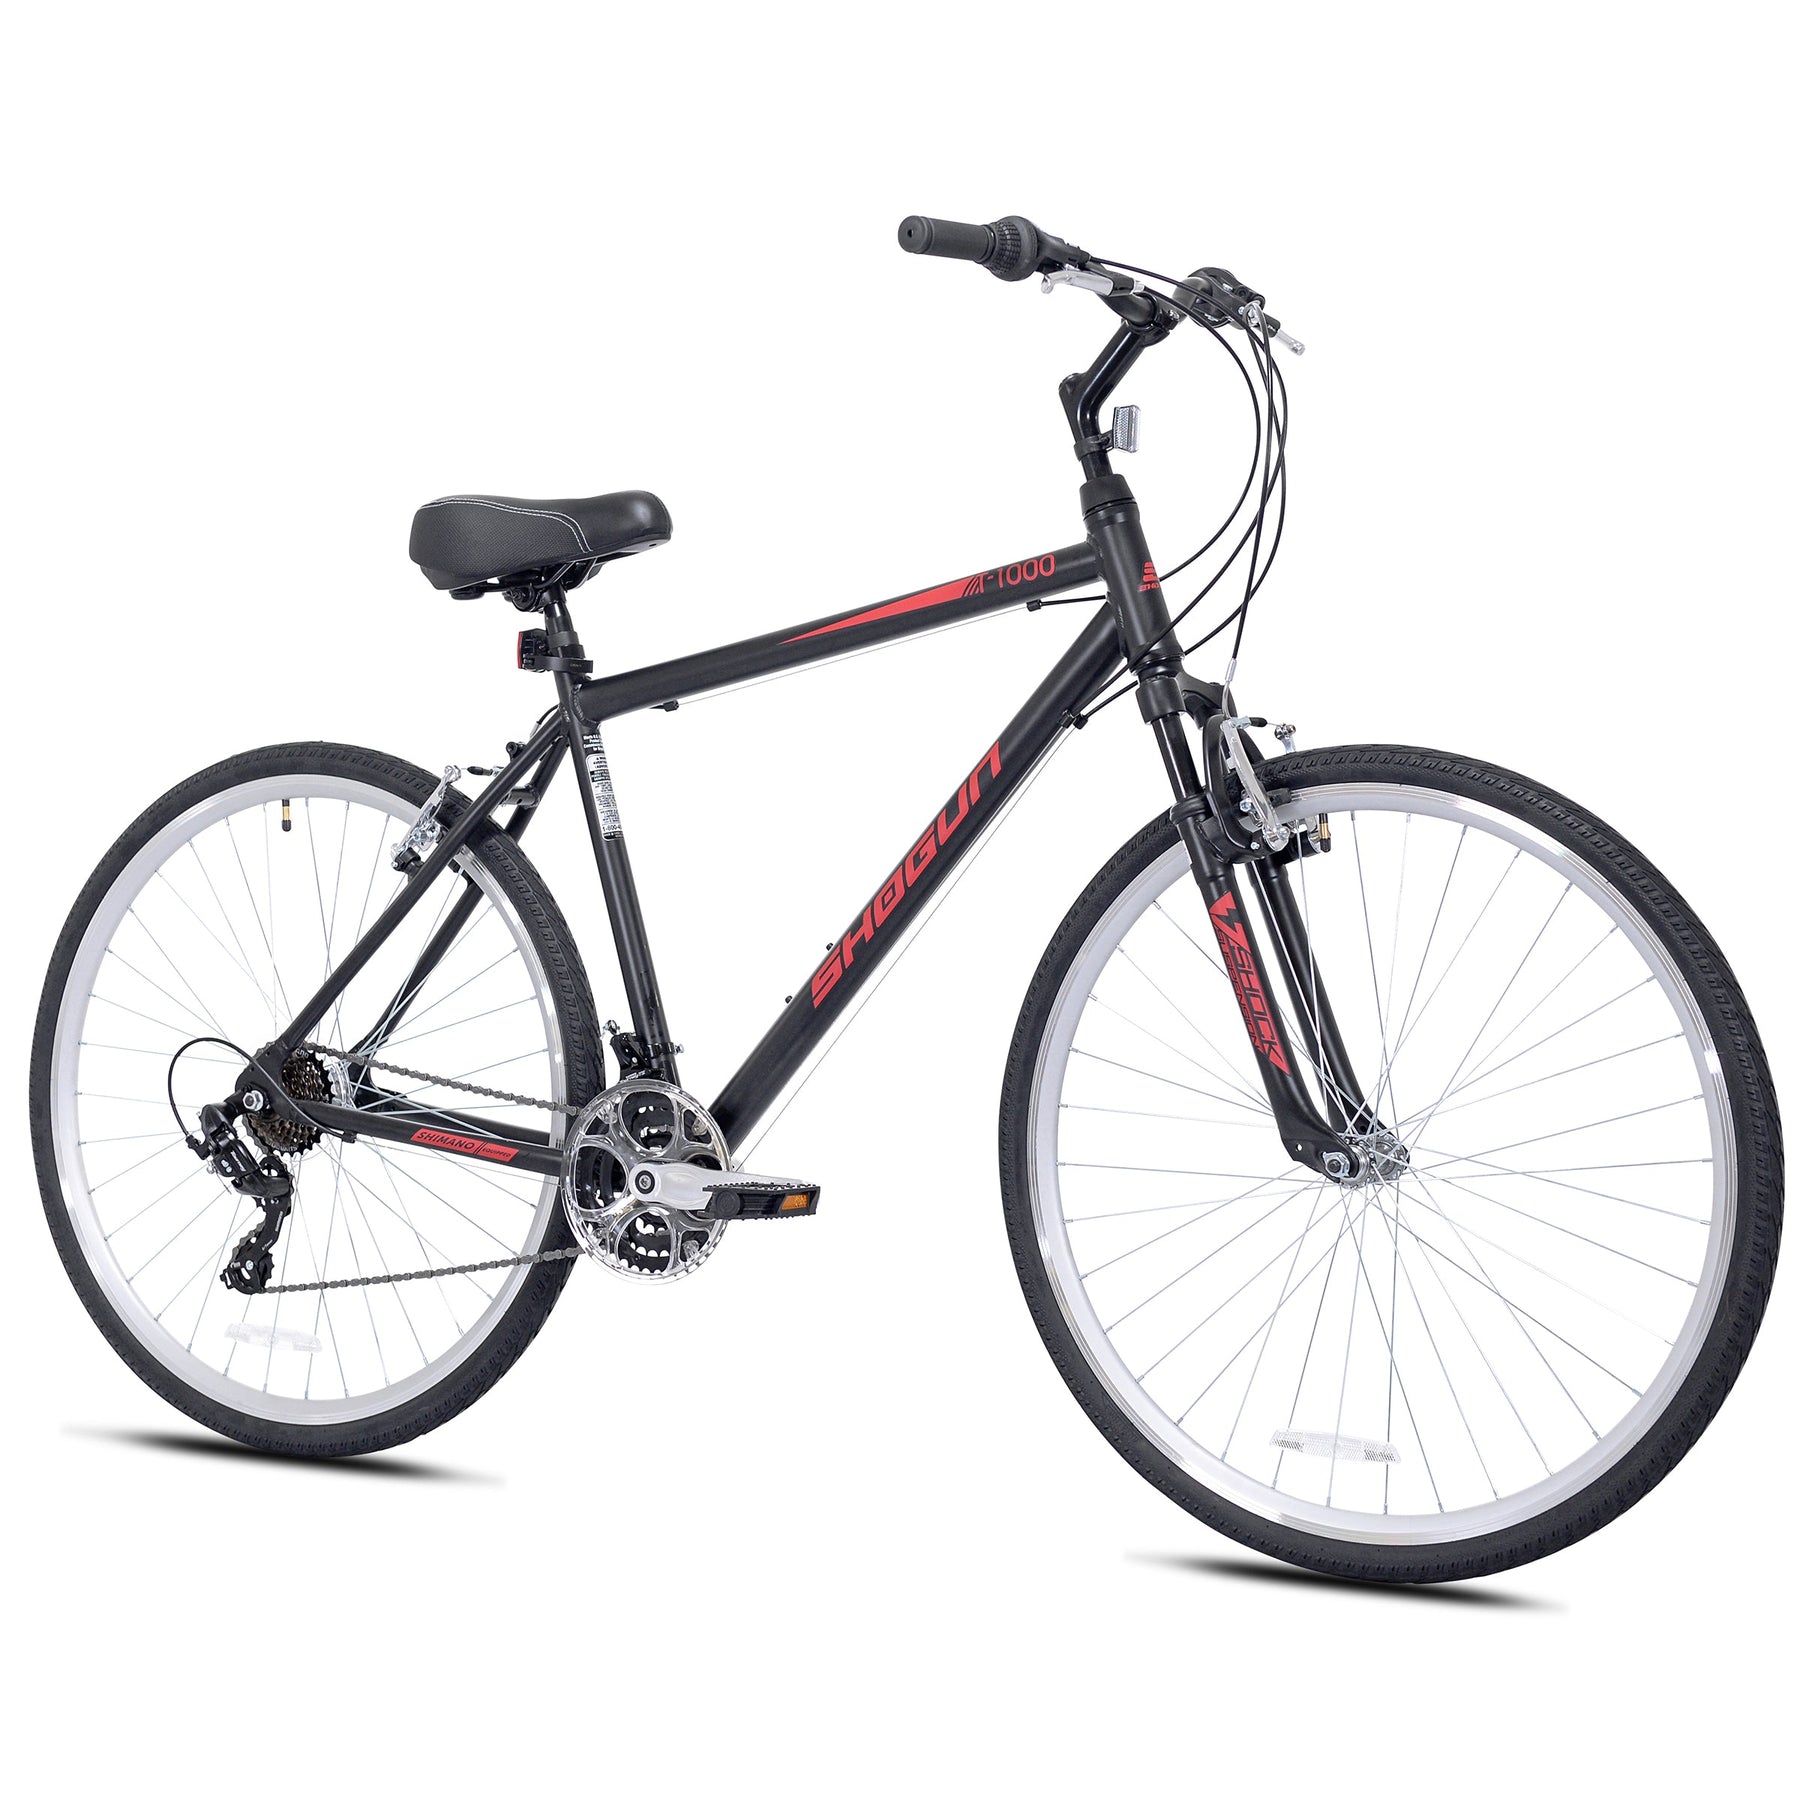 700c Shogun T1000 - (Refurbished) | Hybrid Comfort Bike for Men Ages 14+